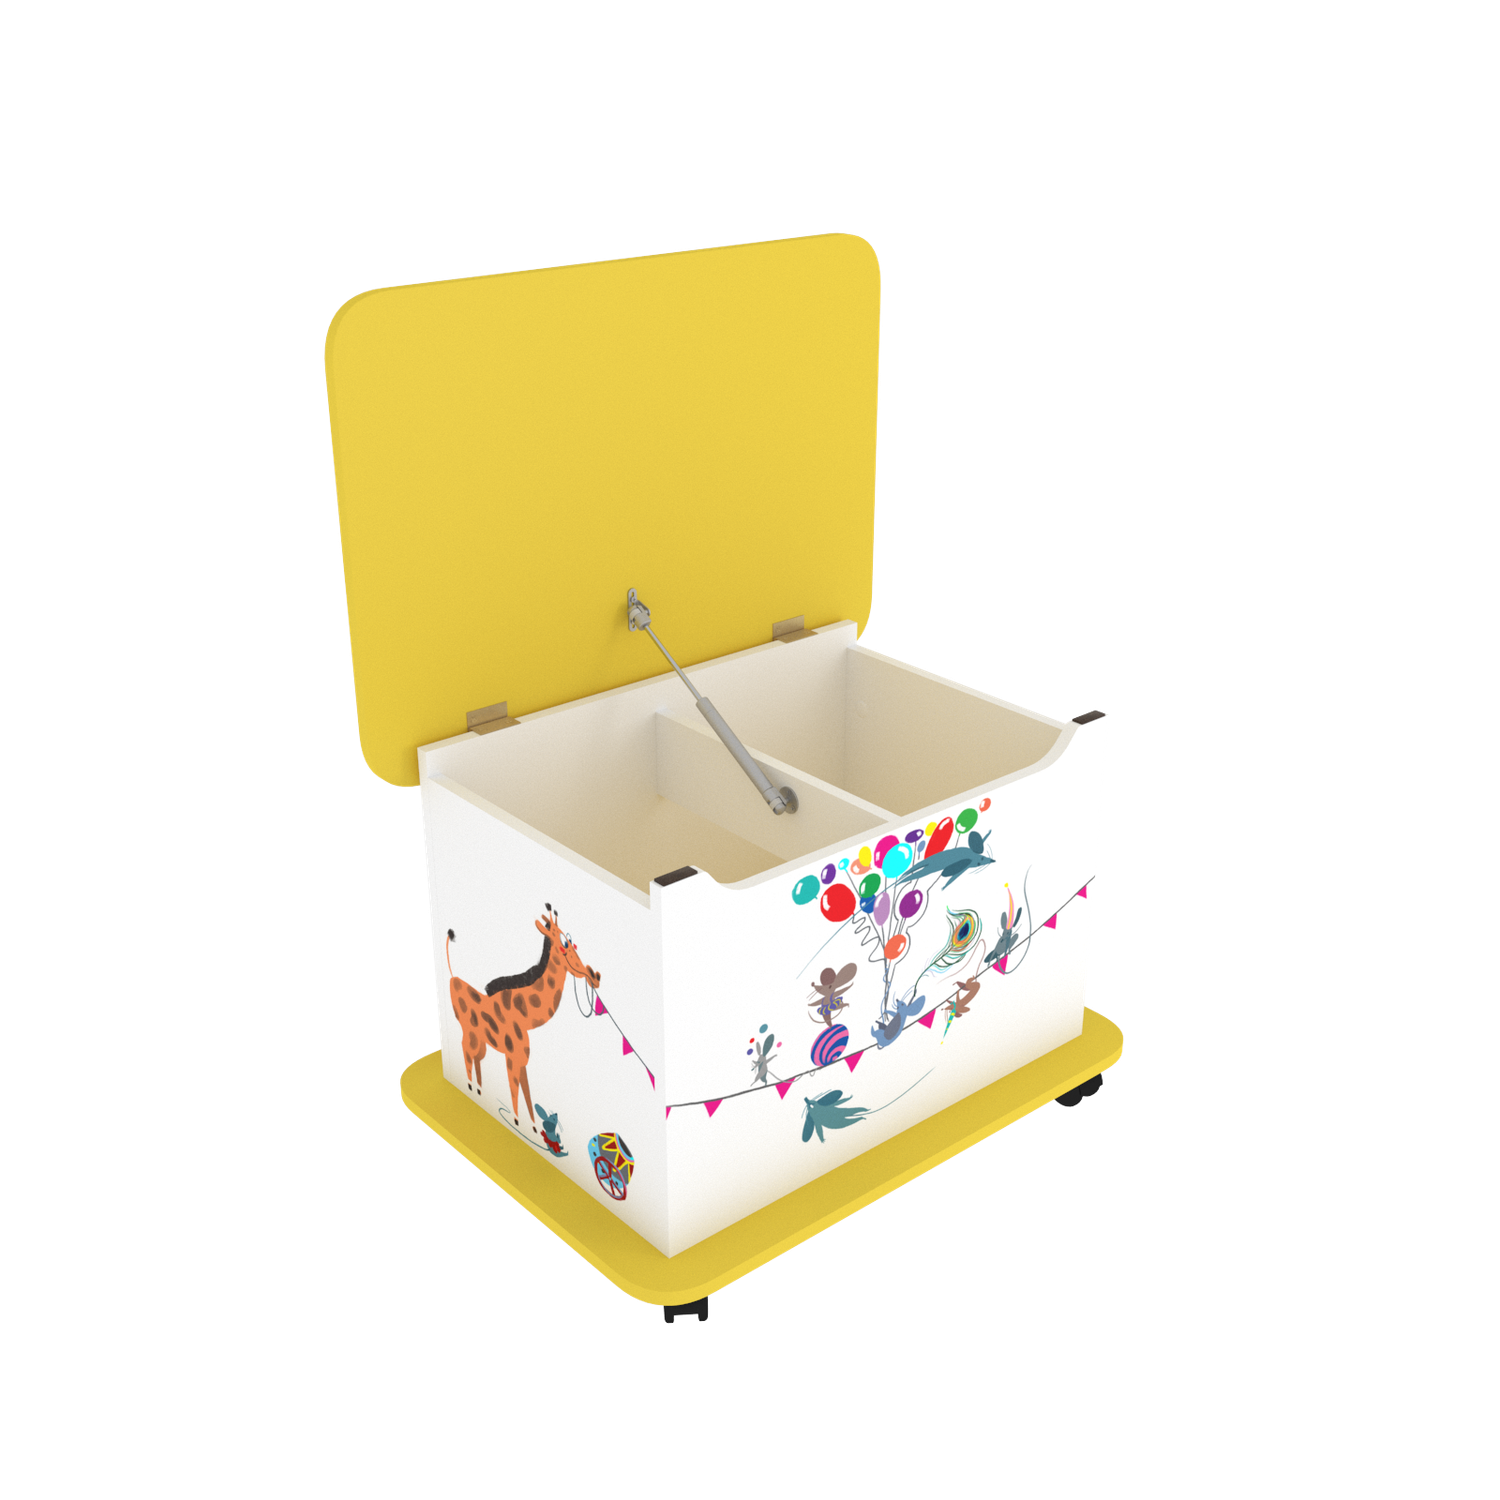 Тумба Тутси для игрушек белый шагрень желтый с рисунком откидная крышка - фото 2